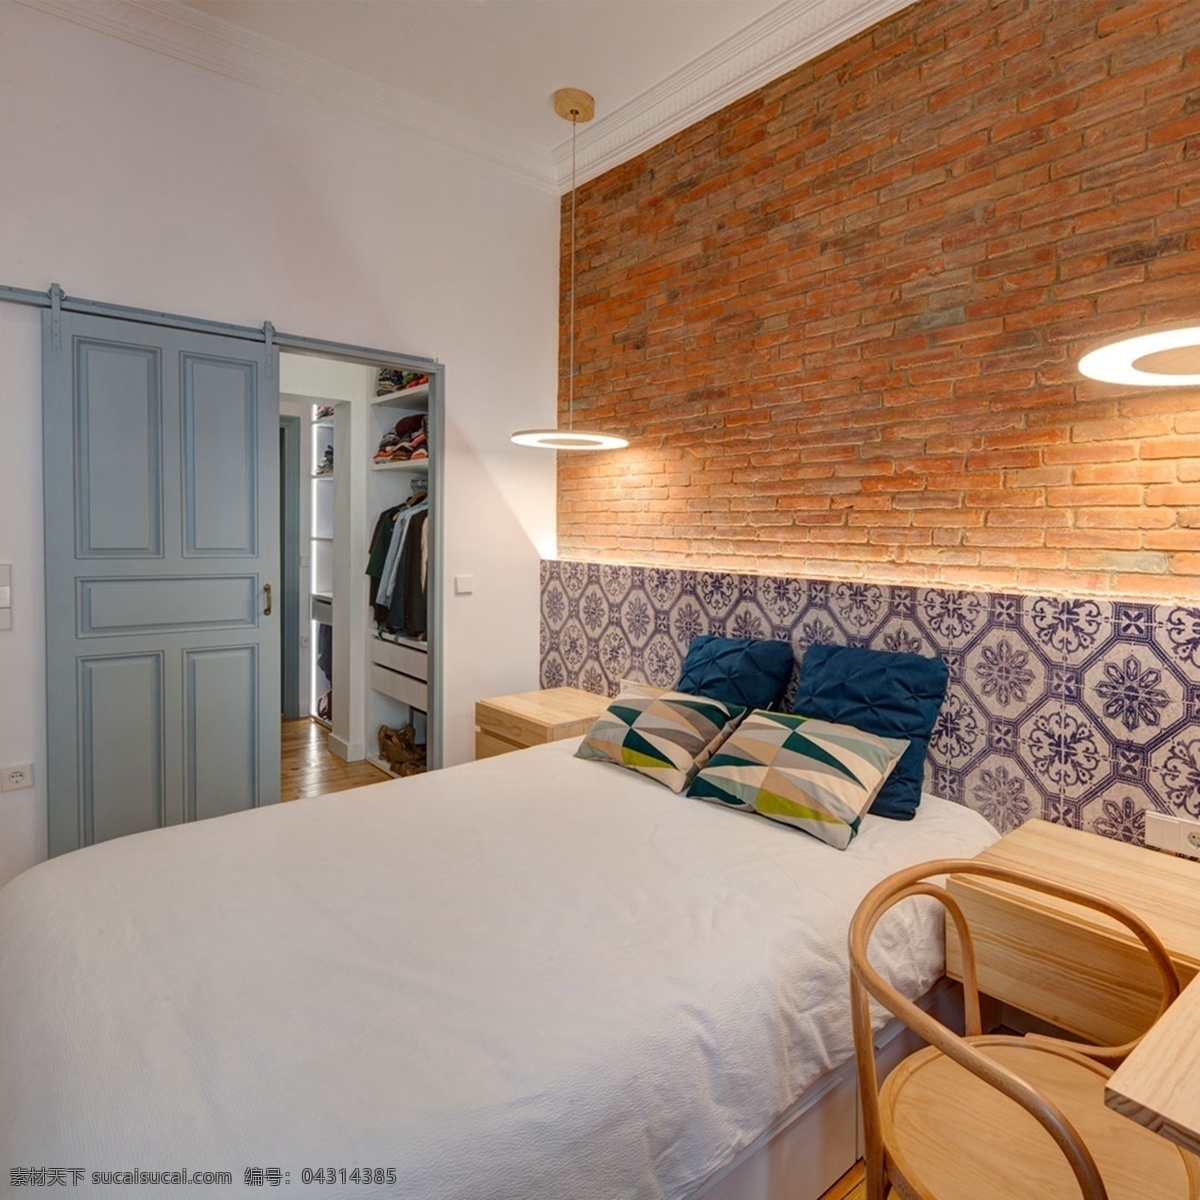 现代 文艺 卧室 亮 褐色 背景 墙 室内装修 效果图 蓝色门 木制背景墙 木制床头 卧室装修